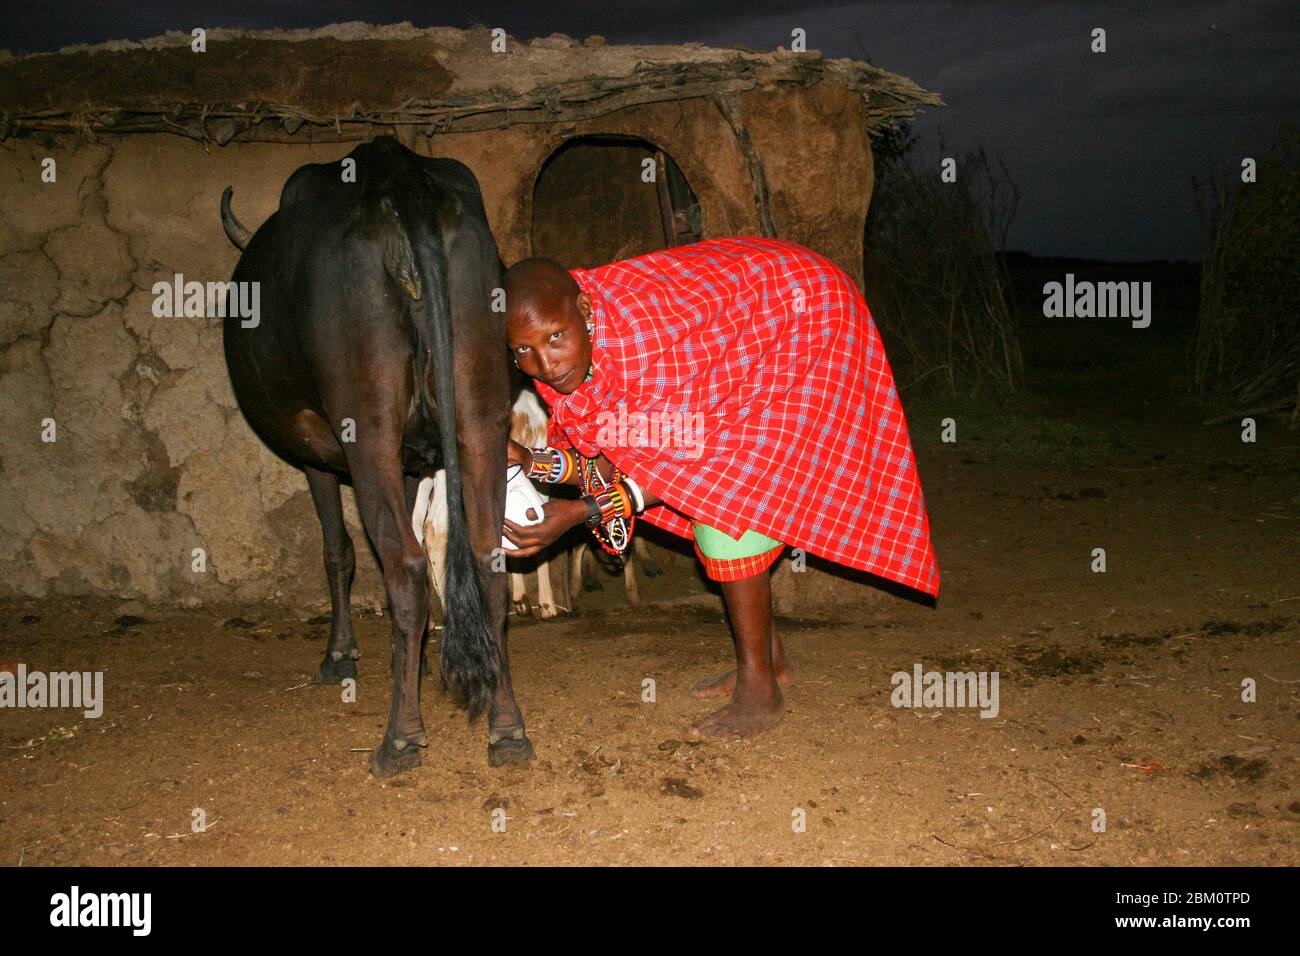 Nachtaufnahme einer Maasai-Frau, die eine Kuh melkt. Maasai ist eine ethnische Gruppe von halbnomadischen Menschen, die in Tansania fotografiert wurden. Stockfoto